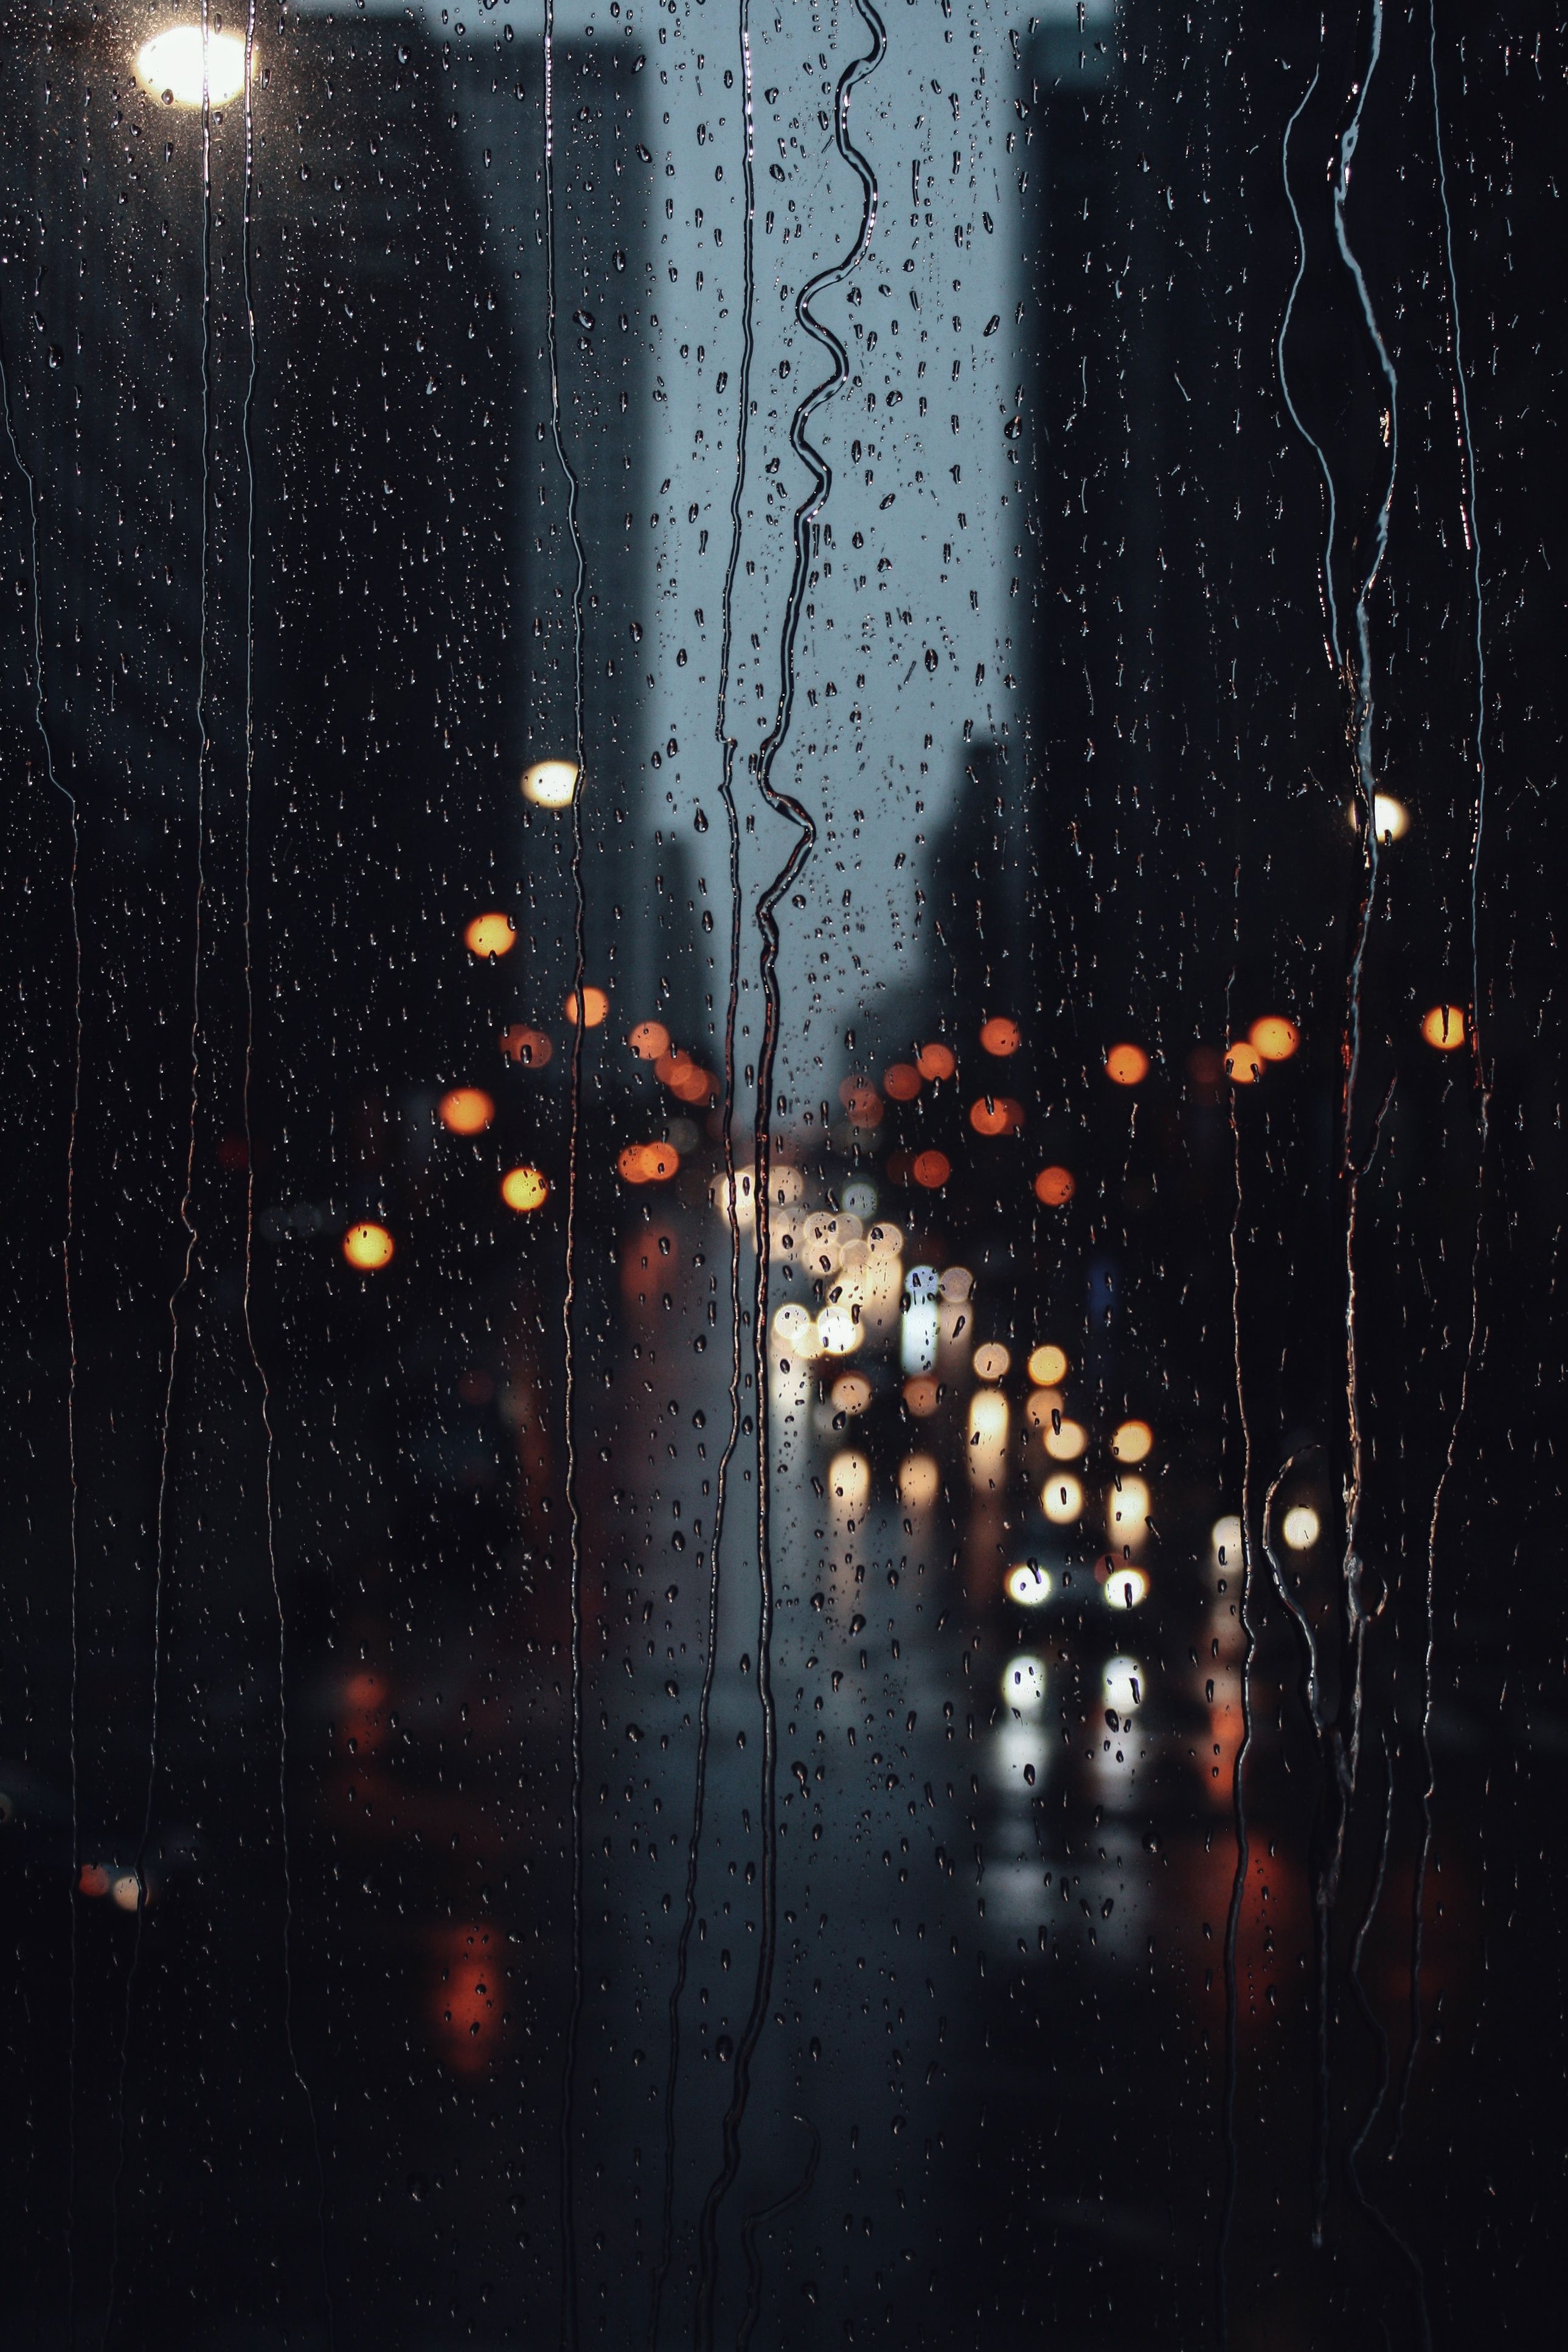 rainy day • Chicago • moody •. Rain wallpaper, Rainy wallpaper